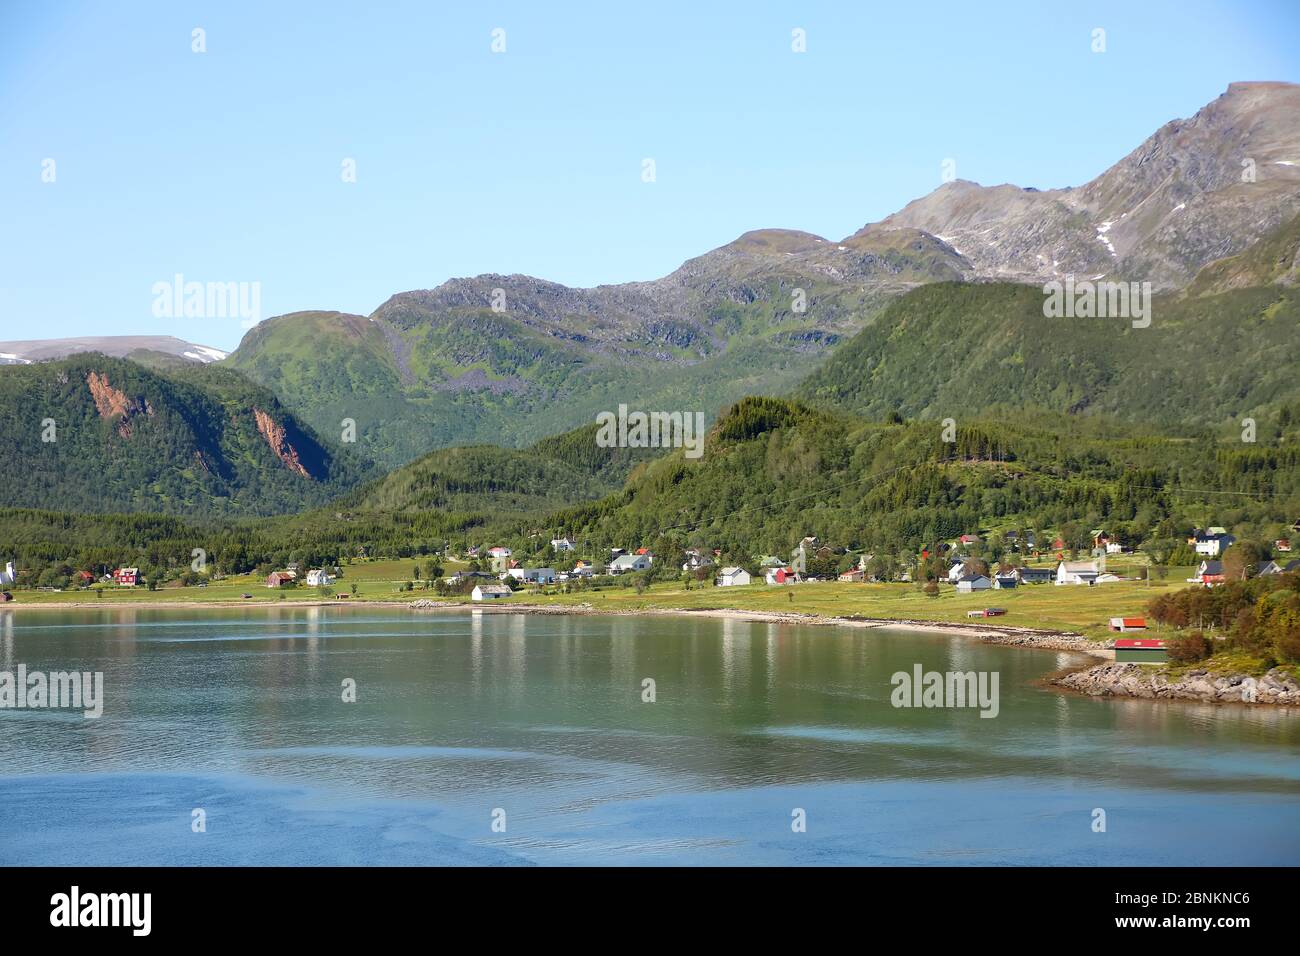 Bellissimo paesaggio panoramico di fiordi, isole, villaggio e passaggi interni; l'Andfjorden & Vestfjorden, tra Bodo & Hammerfest, Norvegia. Foto Stock